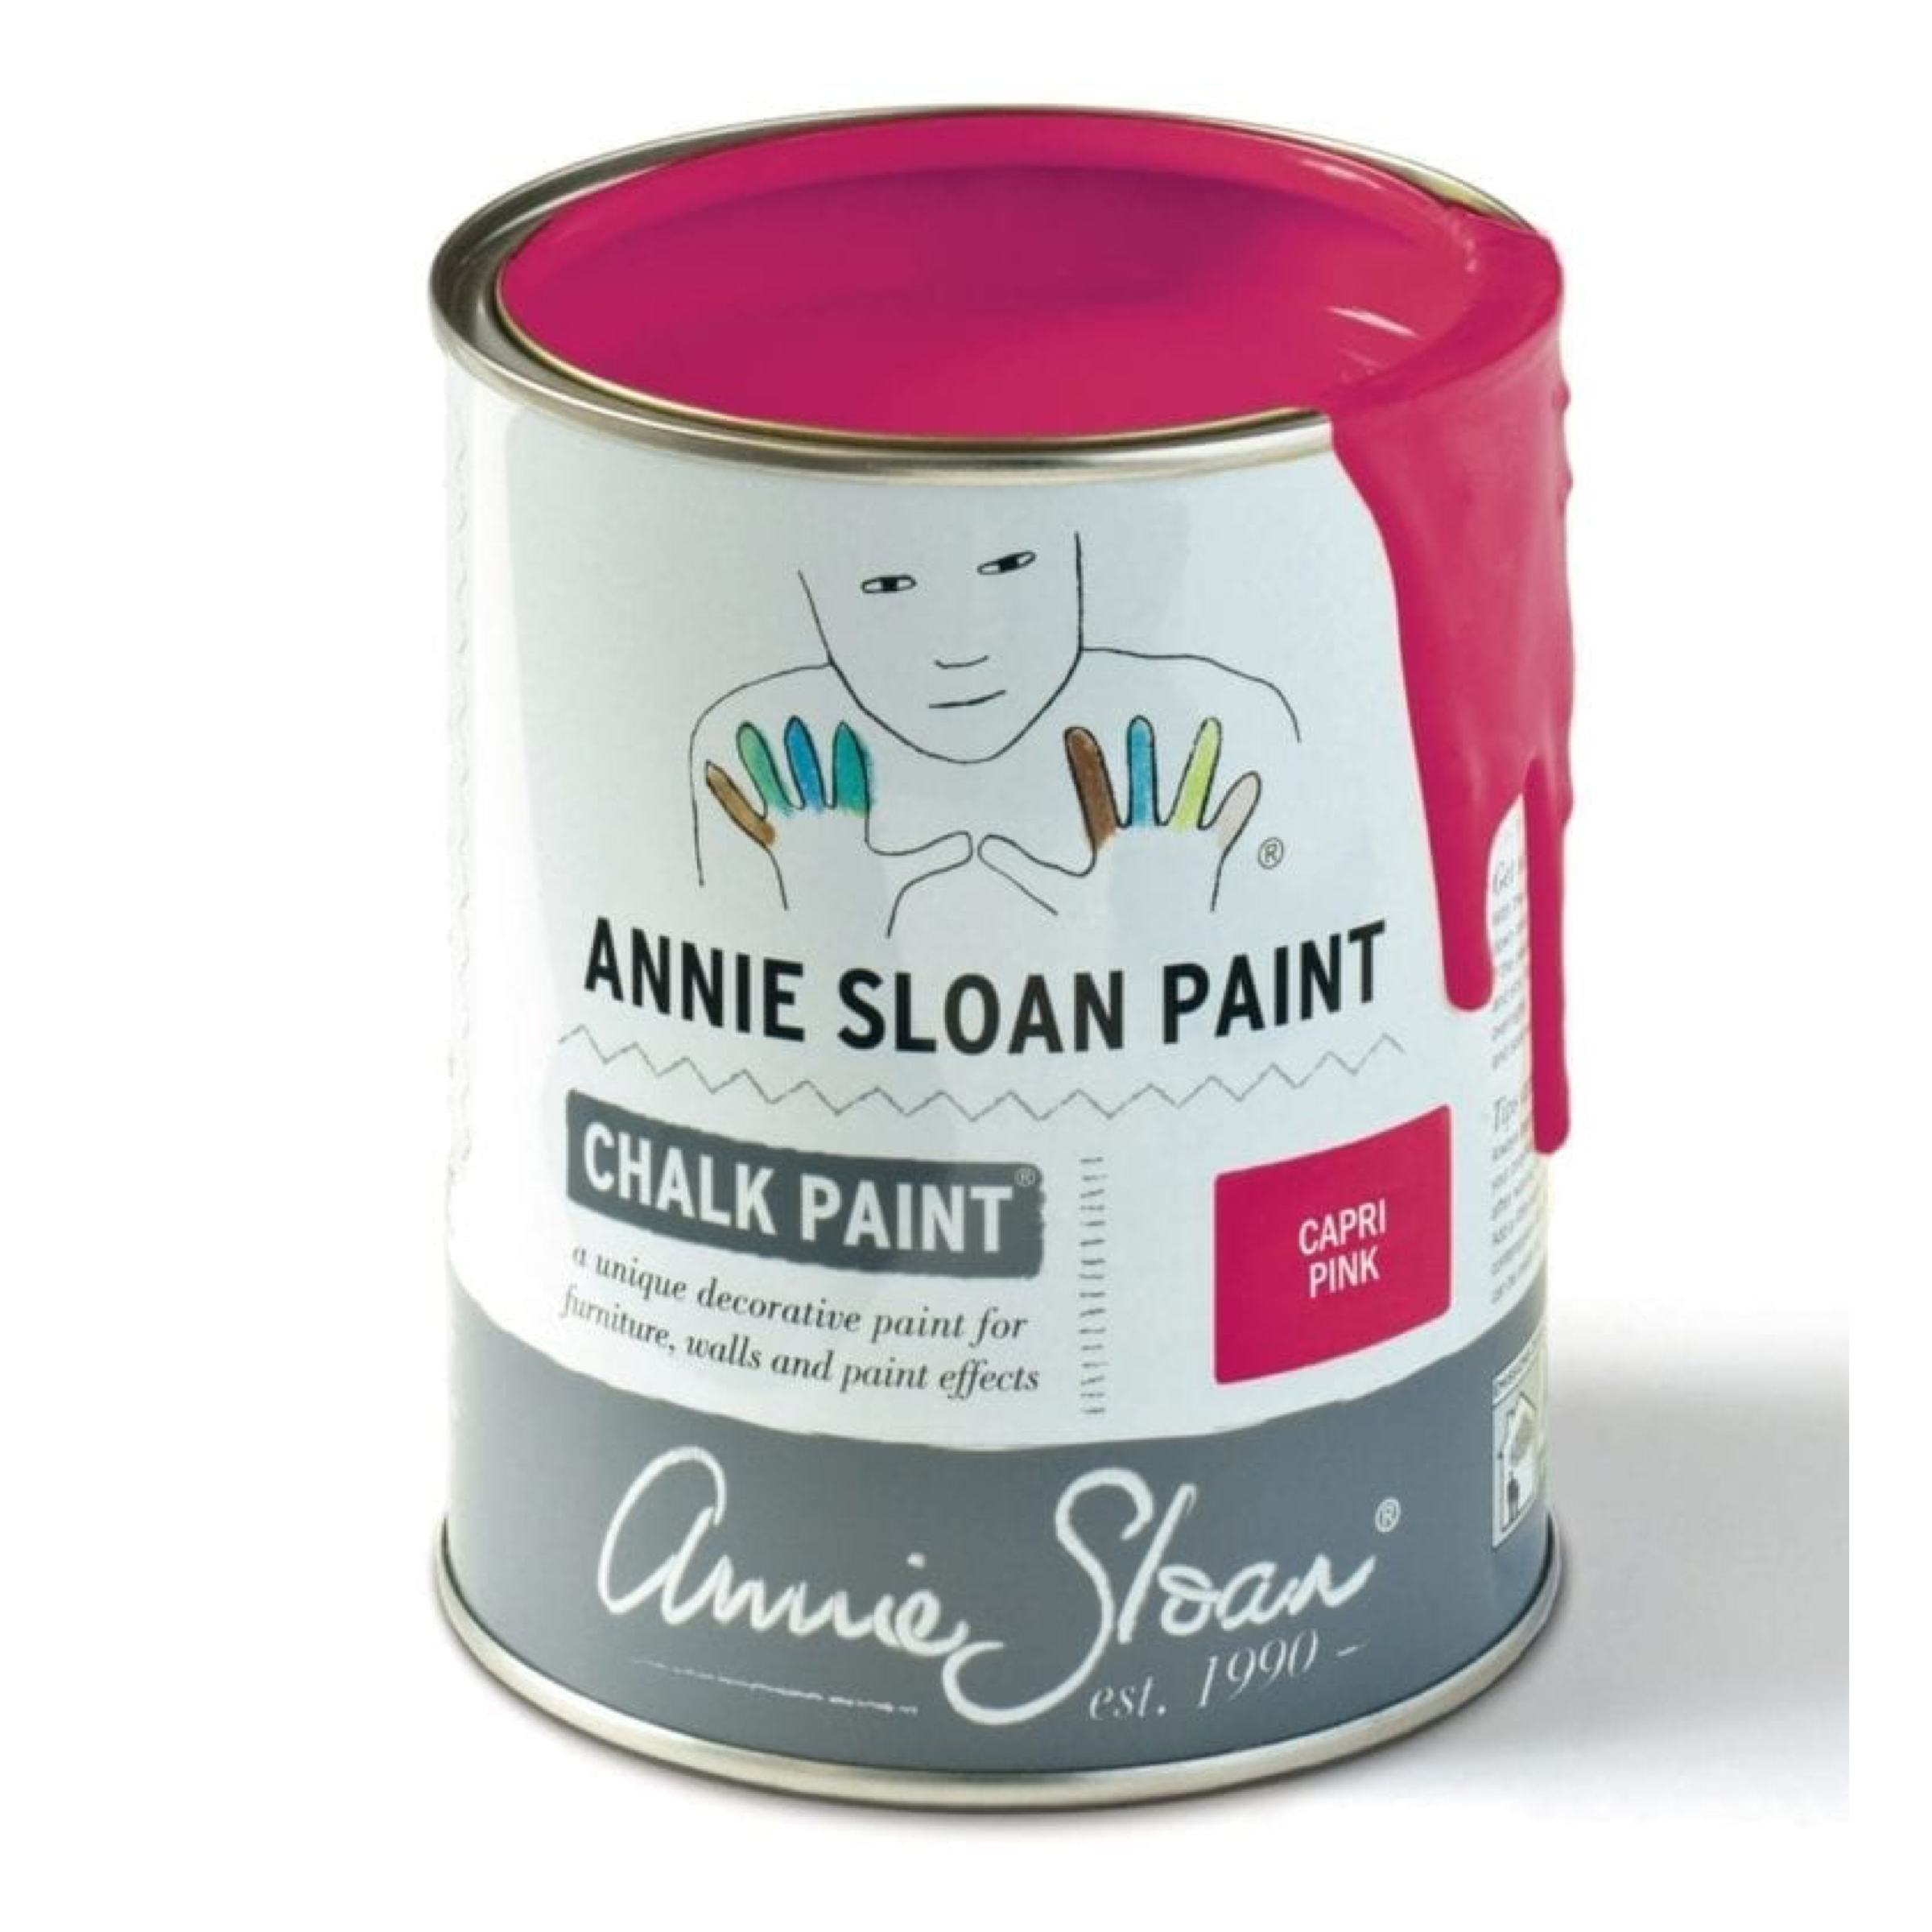 annie-sloan-capri-pink-chalk-paint-1-litre-tin